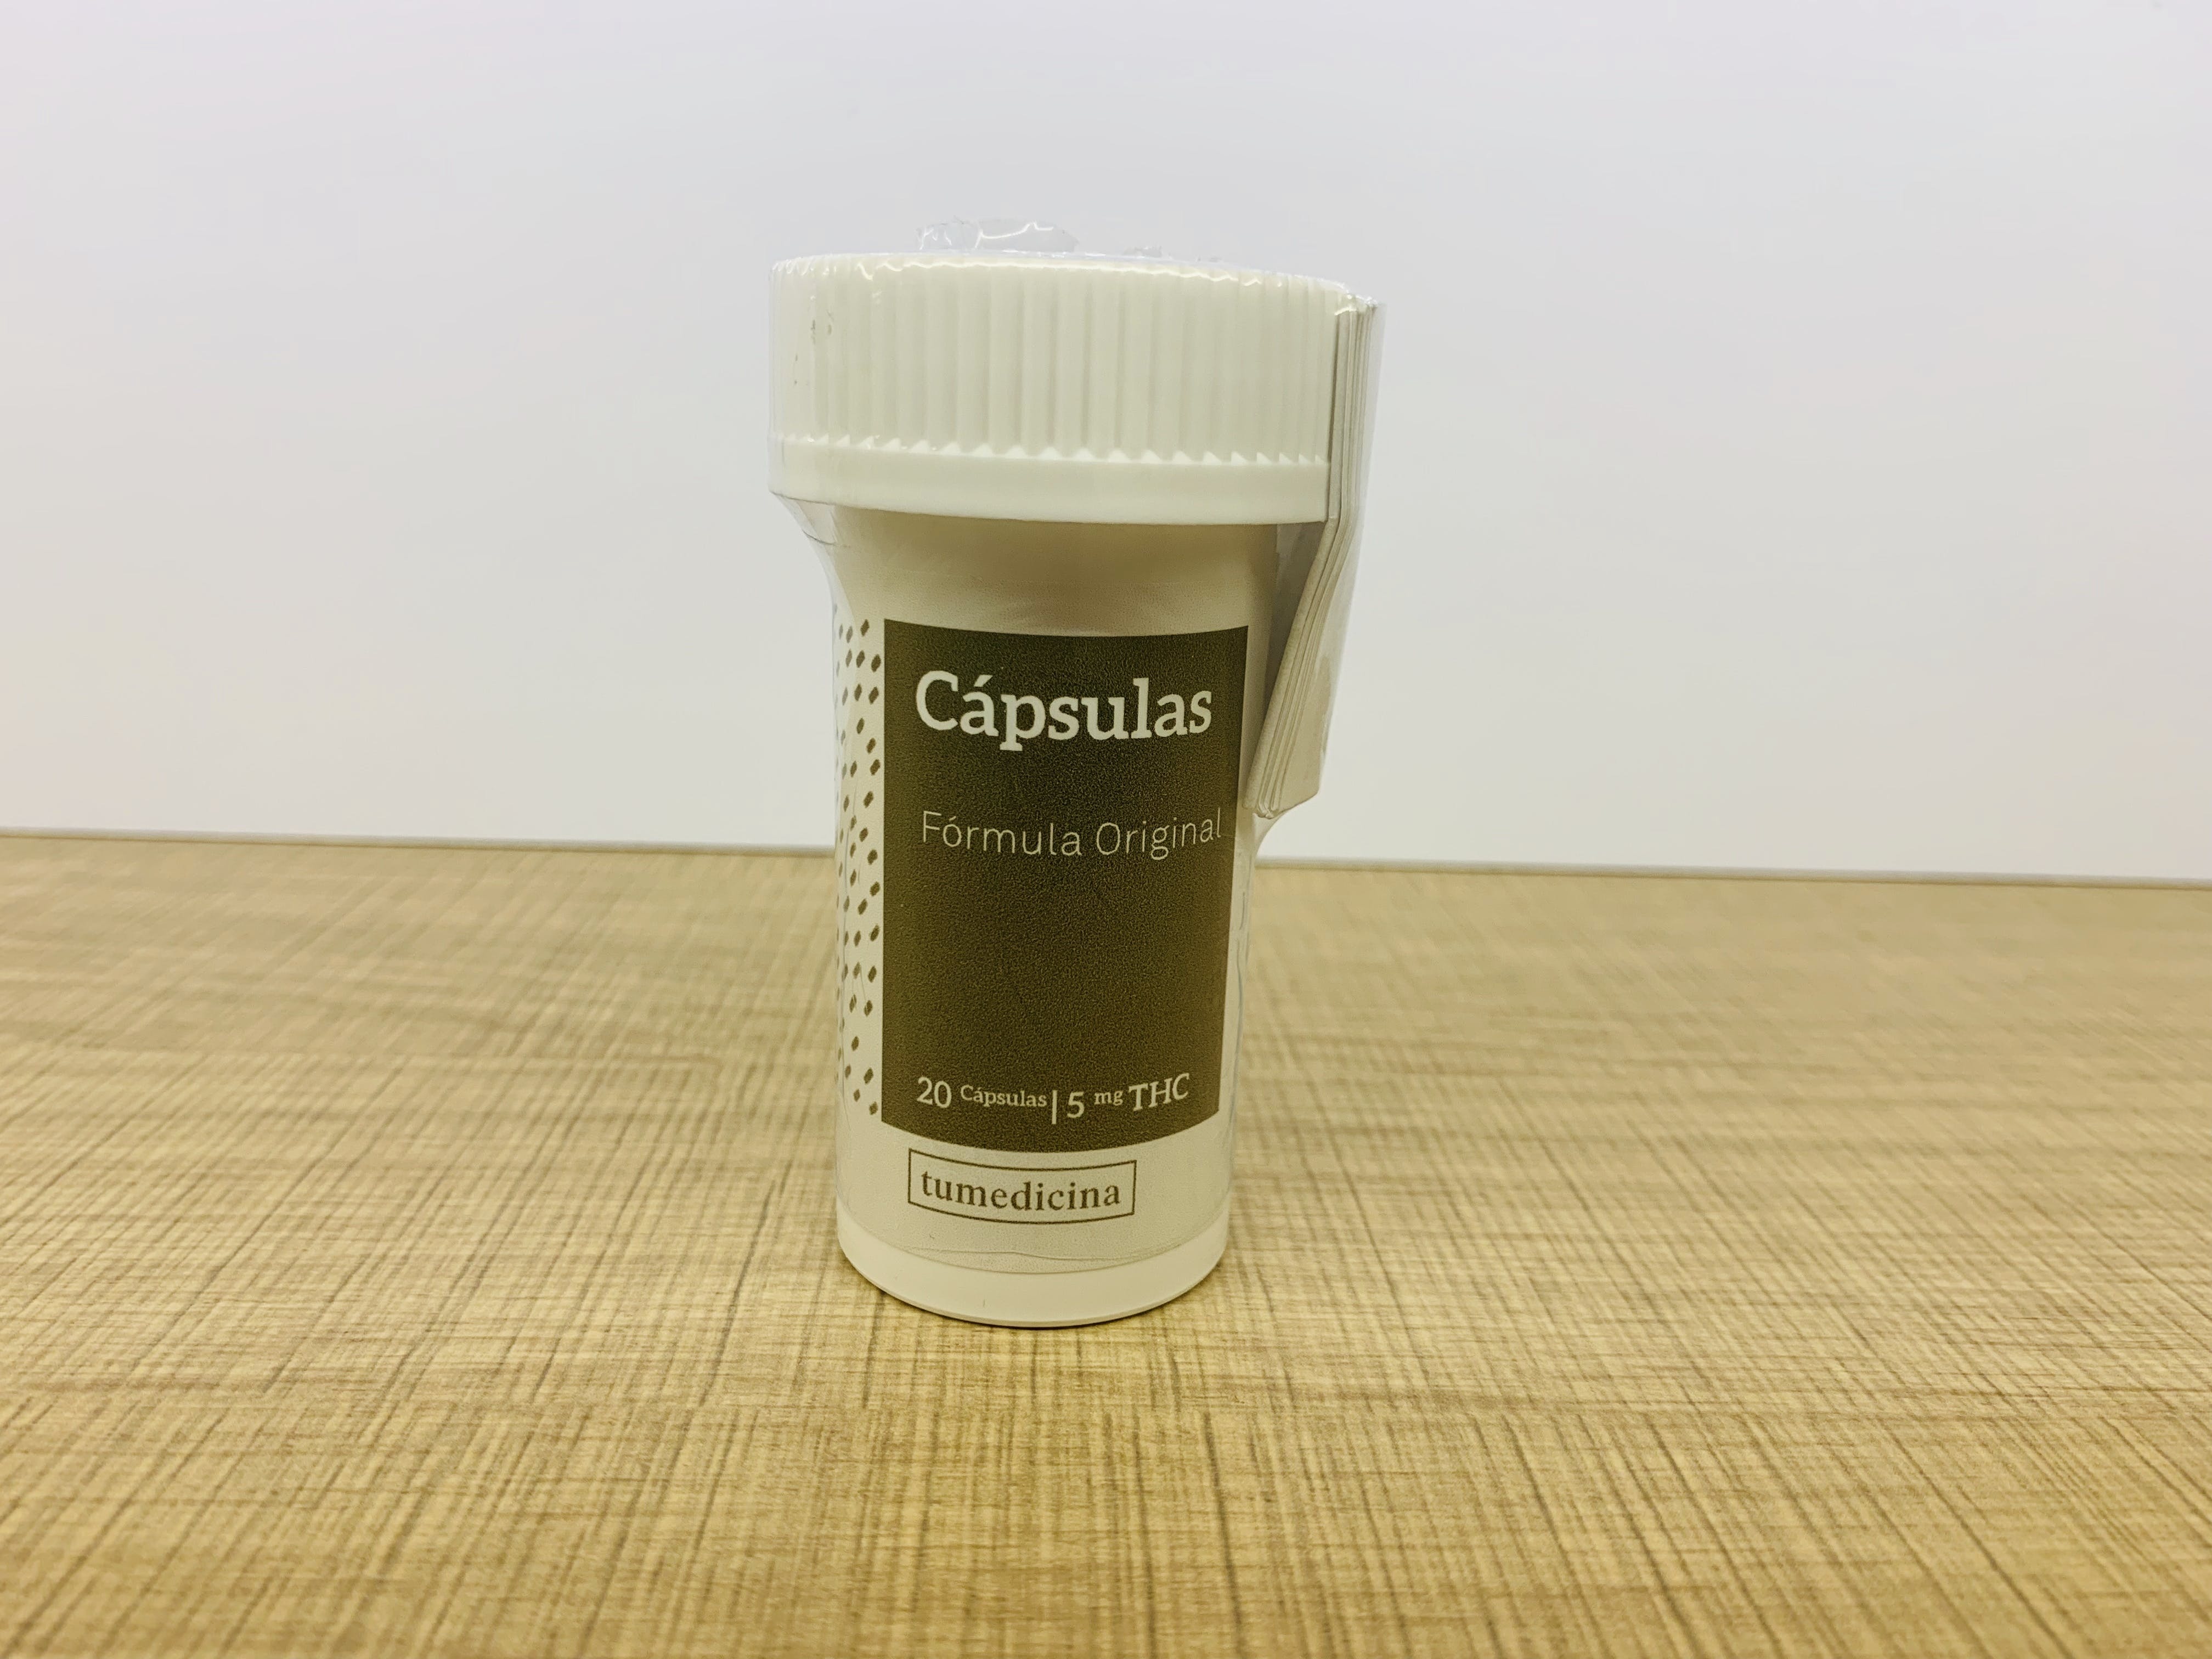 edible-cima-original-capsules-5mg